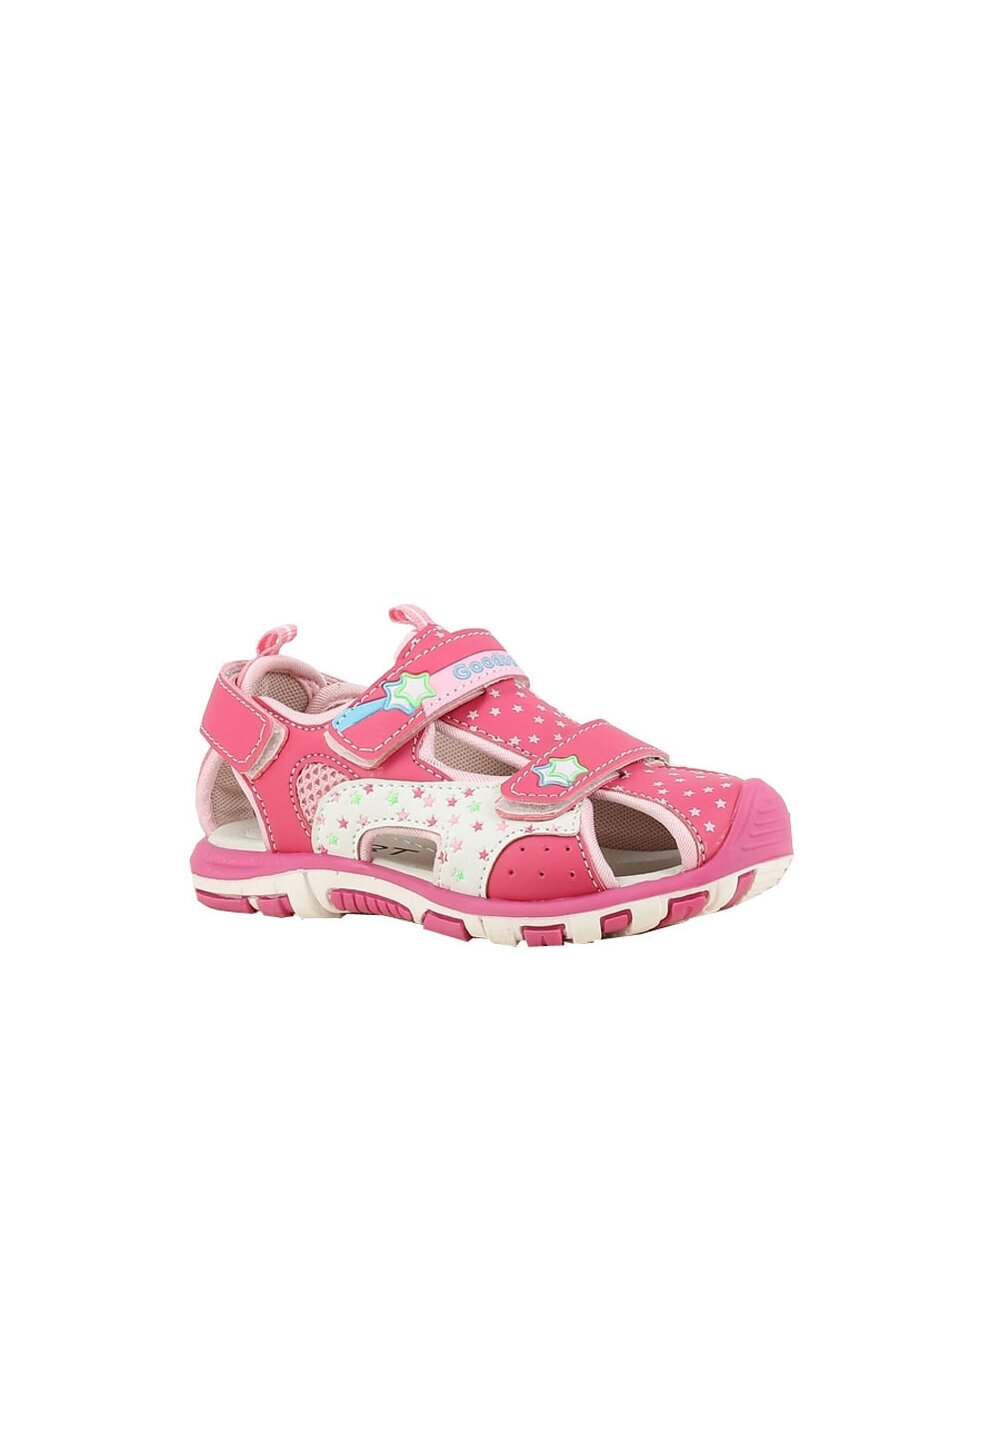 Sandale fete, cu scai din piele ecologica, roz inchis cu stele